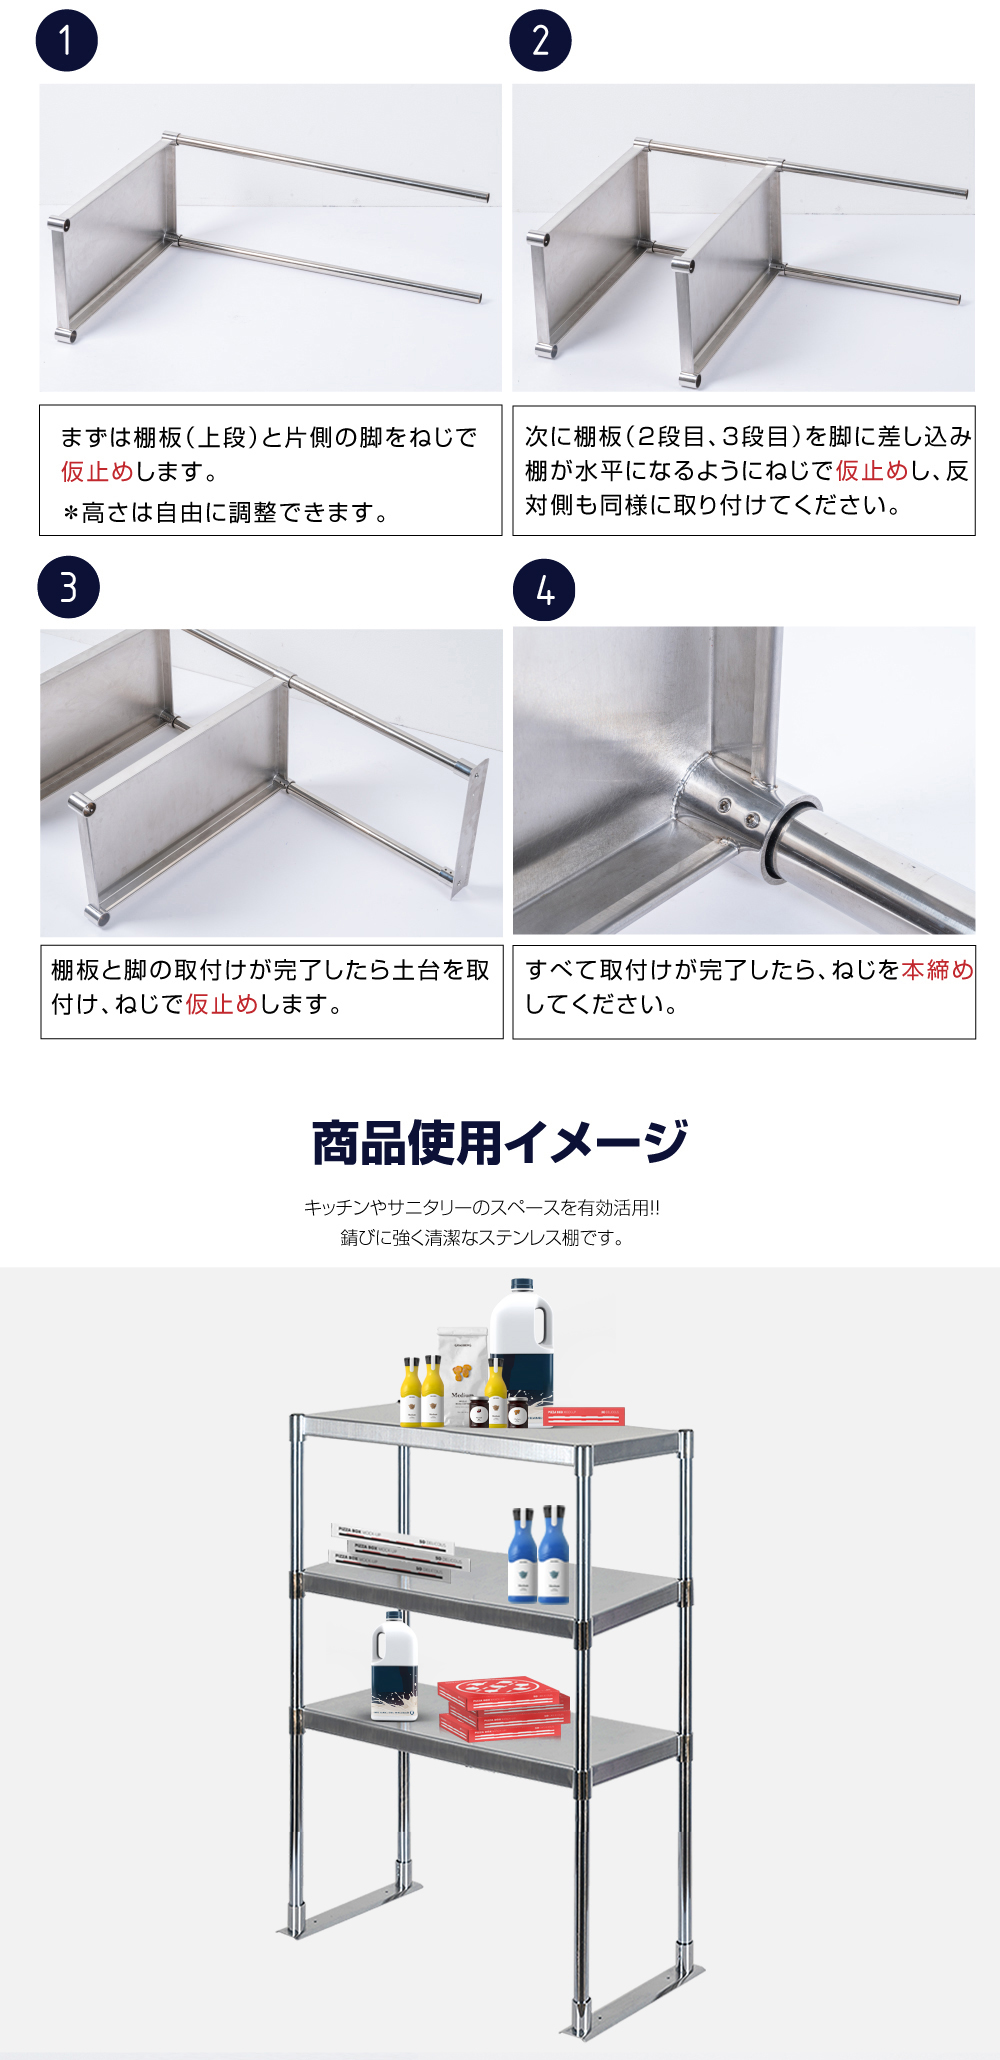 日本製造 ステンレス製 業務用 キッチン置き棚 3段タイプ ステンレス 